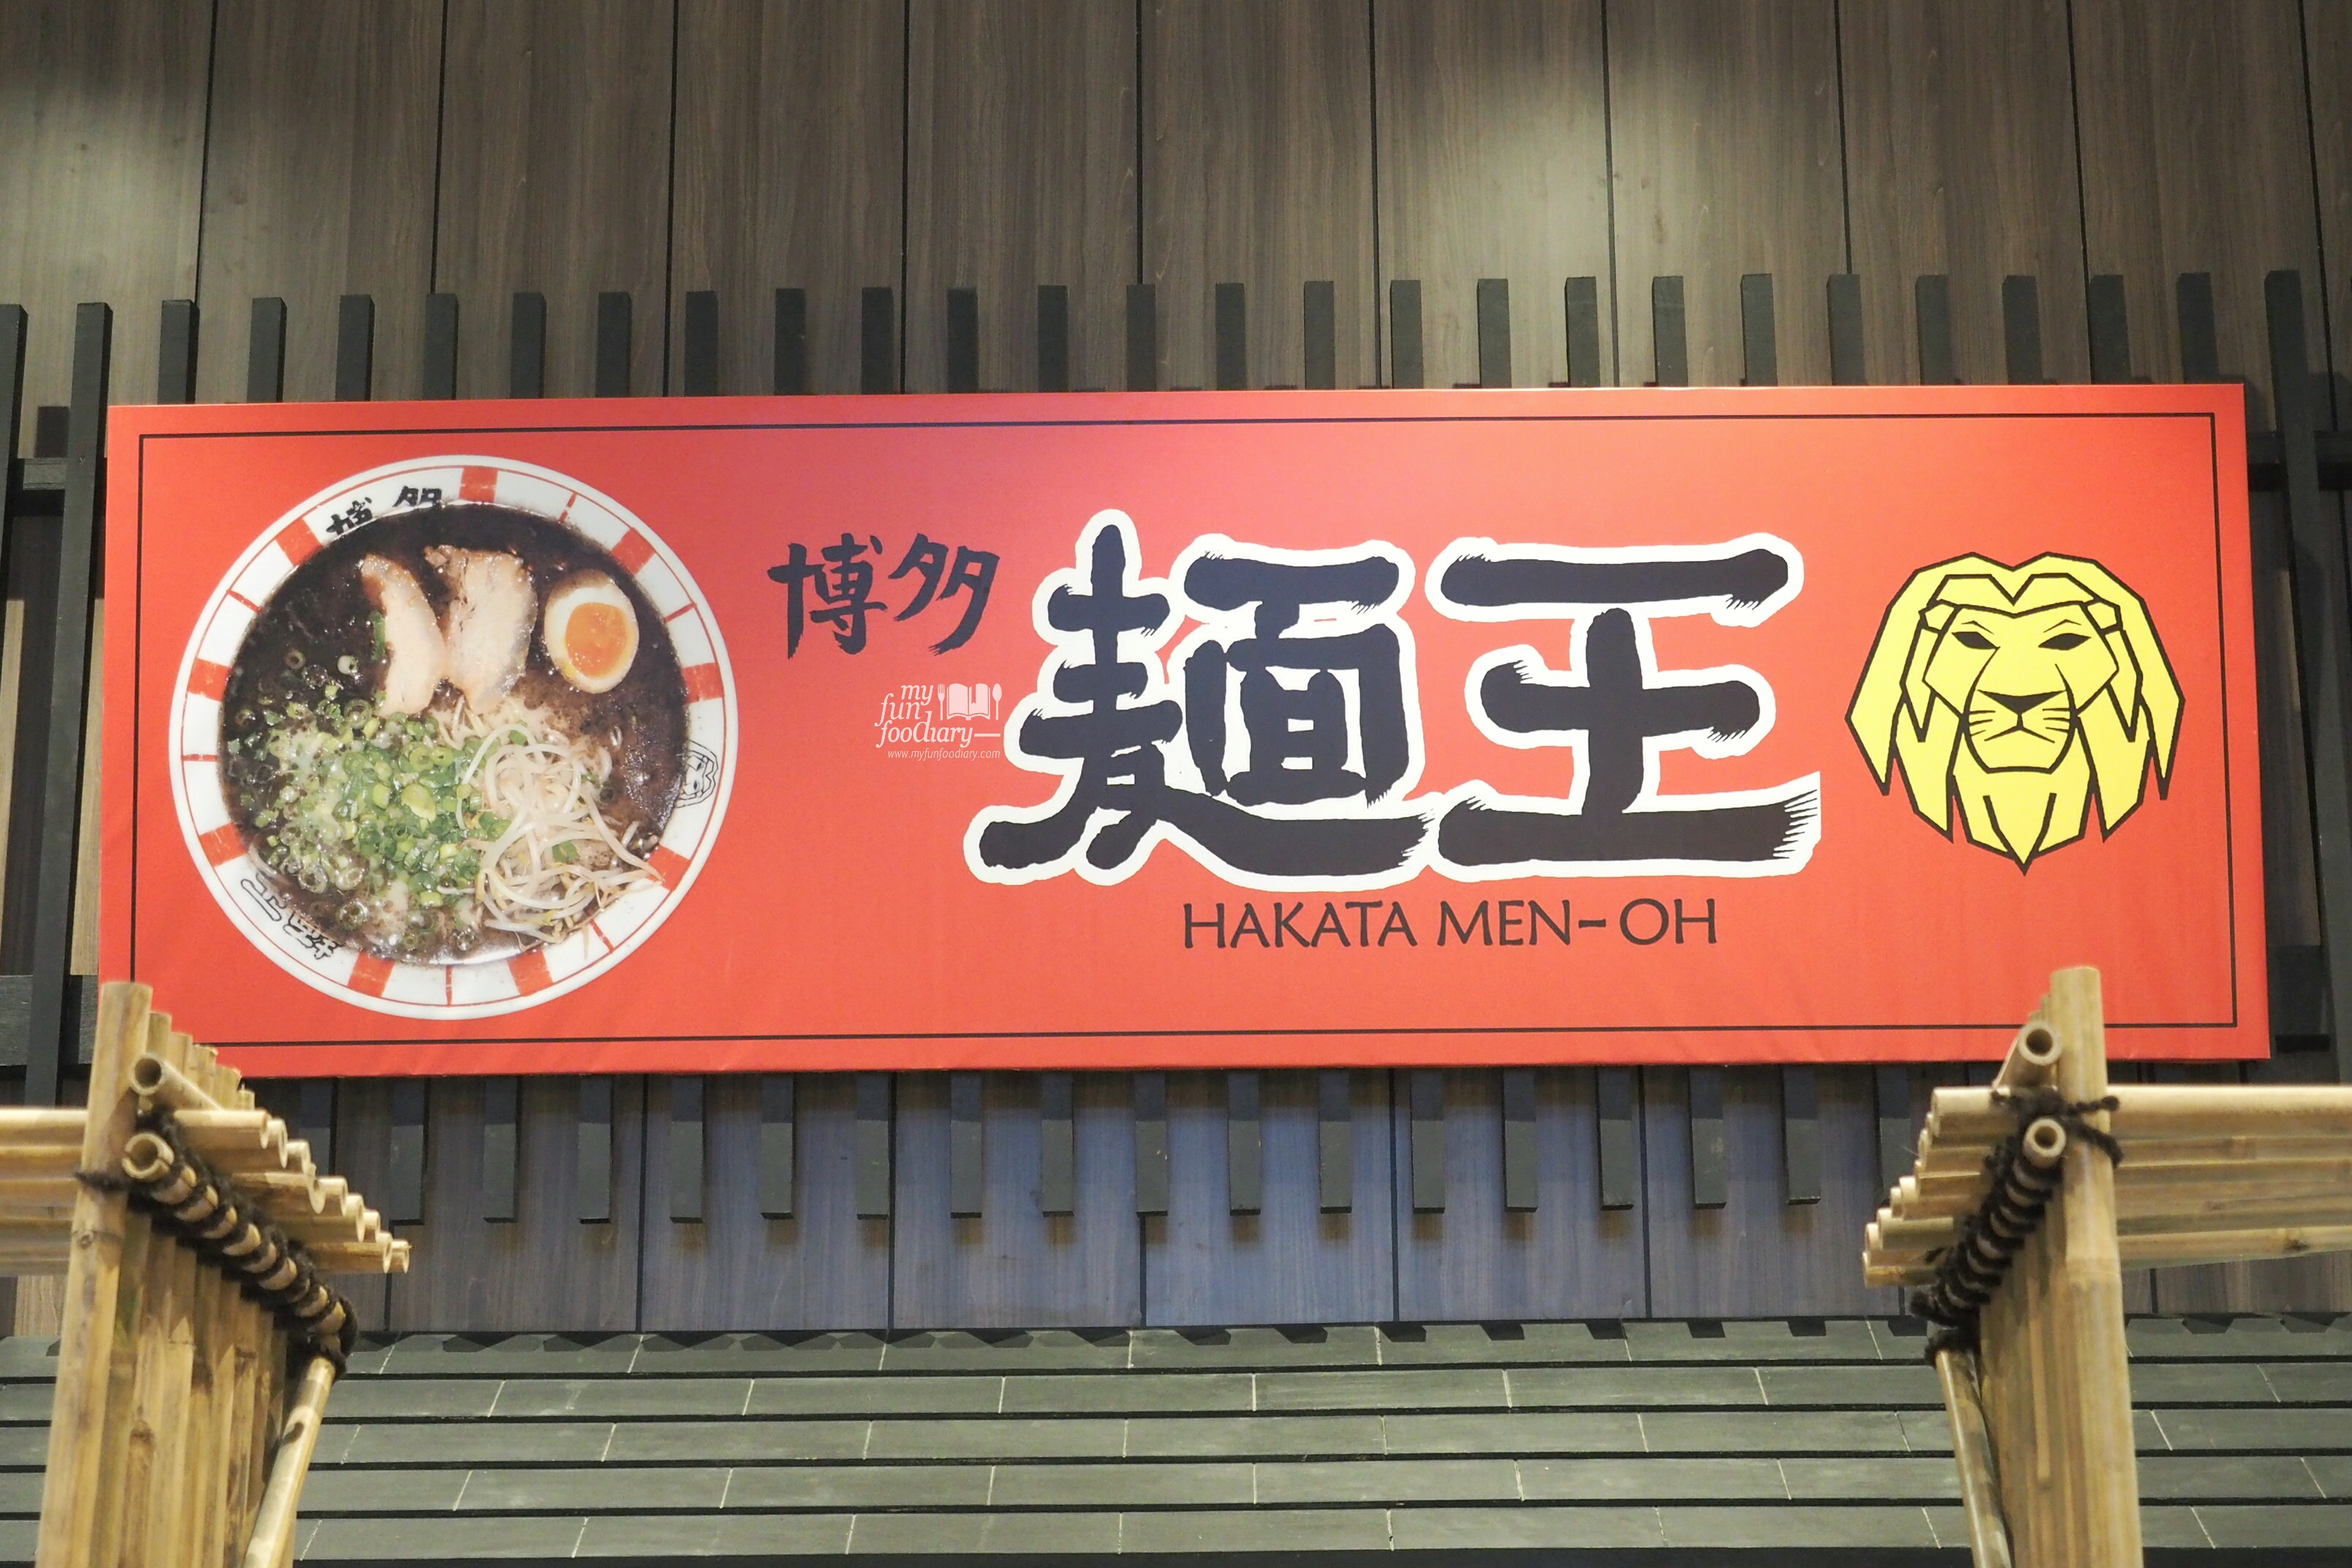 Hakata Men-Oh Ramen House by Myfunfoodiary